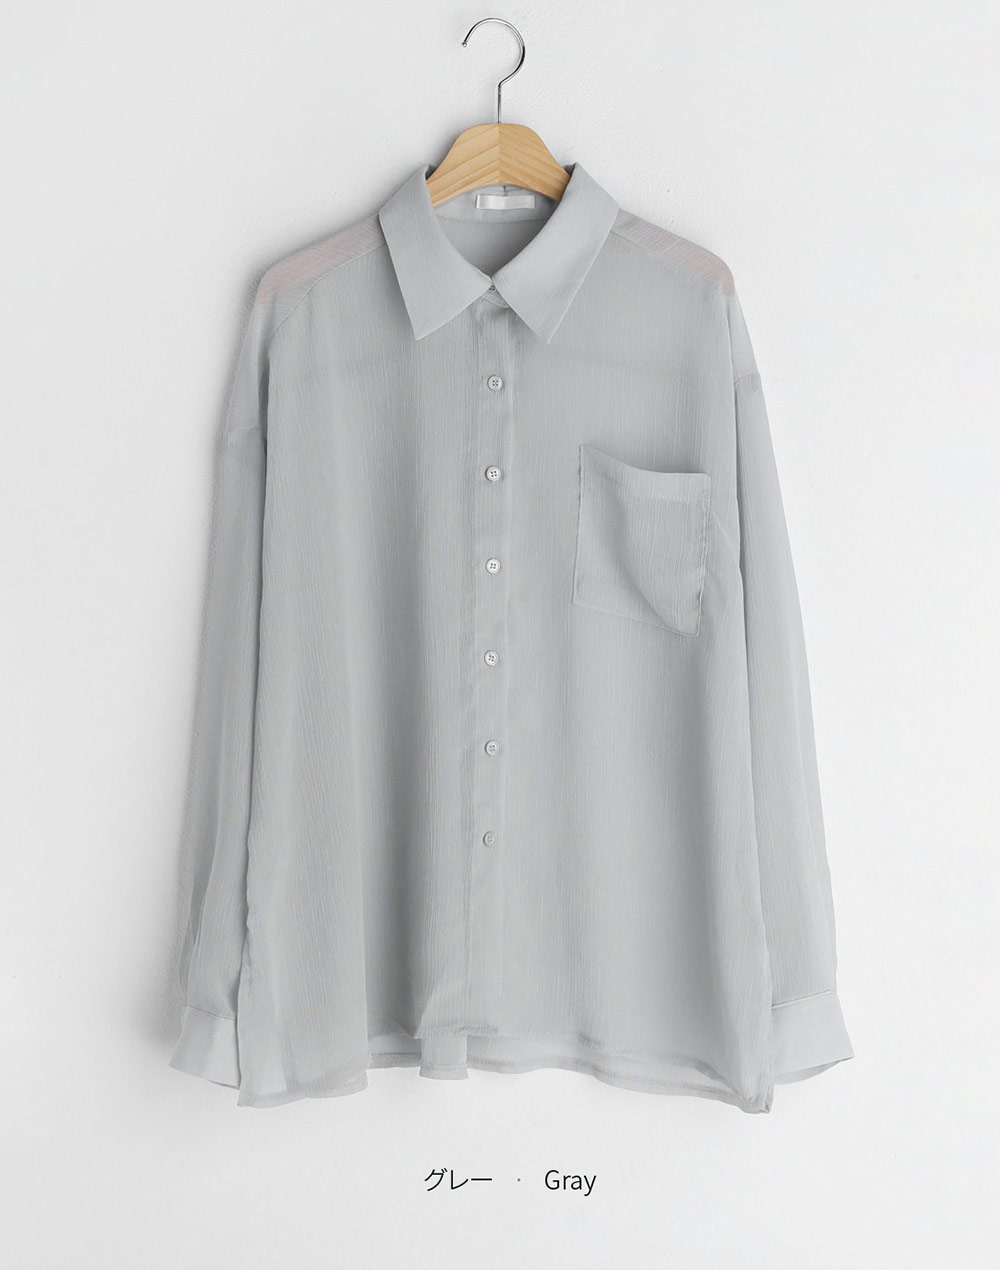 シアーオーバーシャツ・t282592（ブラウス/シャツ）| cho____07 | 東京ガールズマーケット